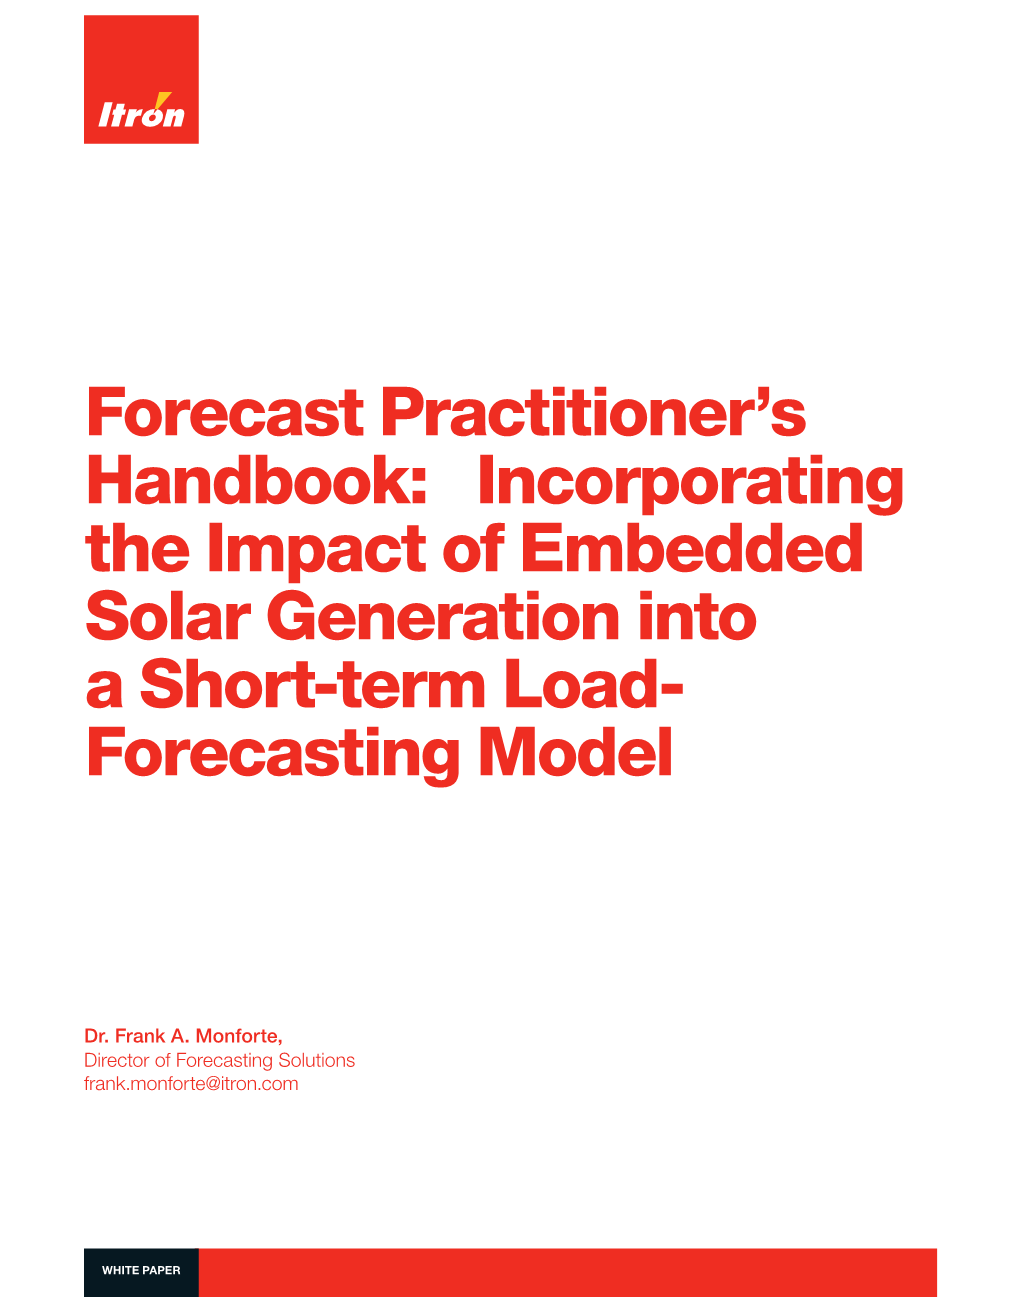 Forecasting Solar Generation | 101376WP-01